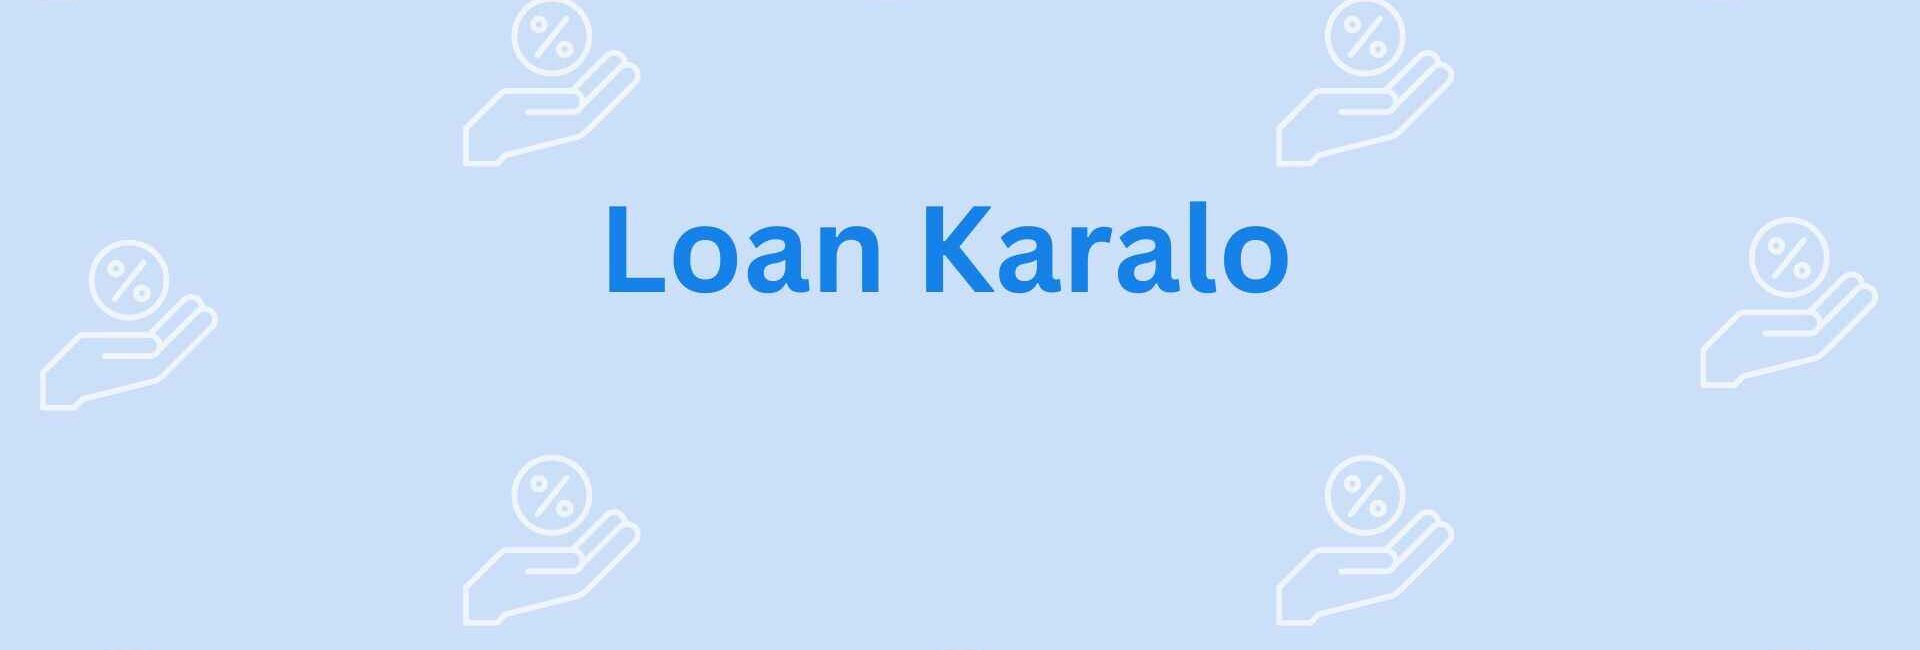 Loan Karalo- Loan assistance services in Noida